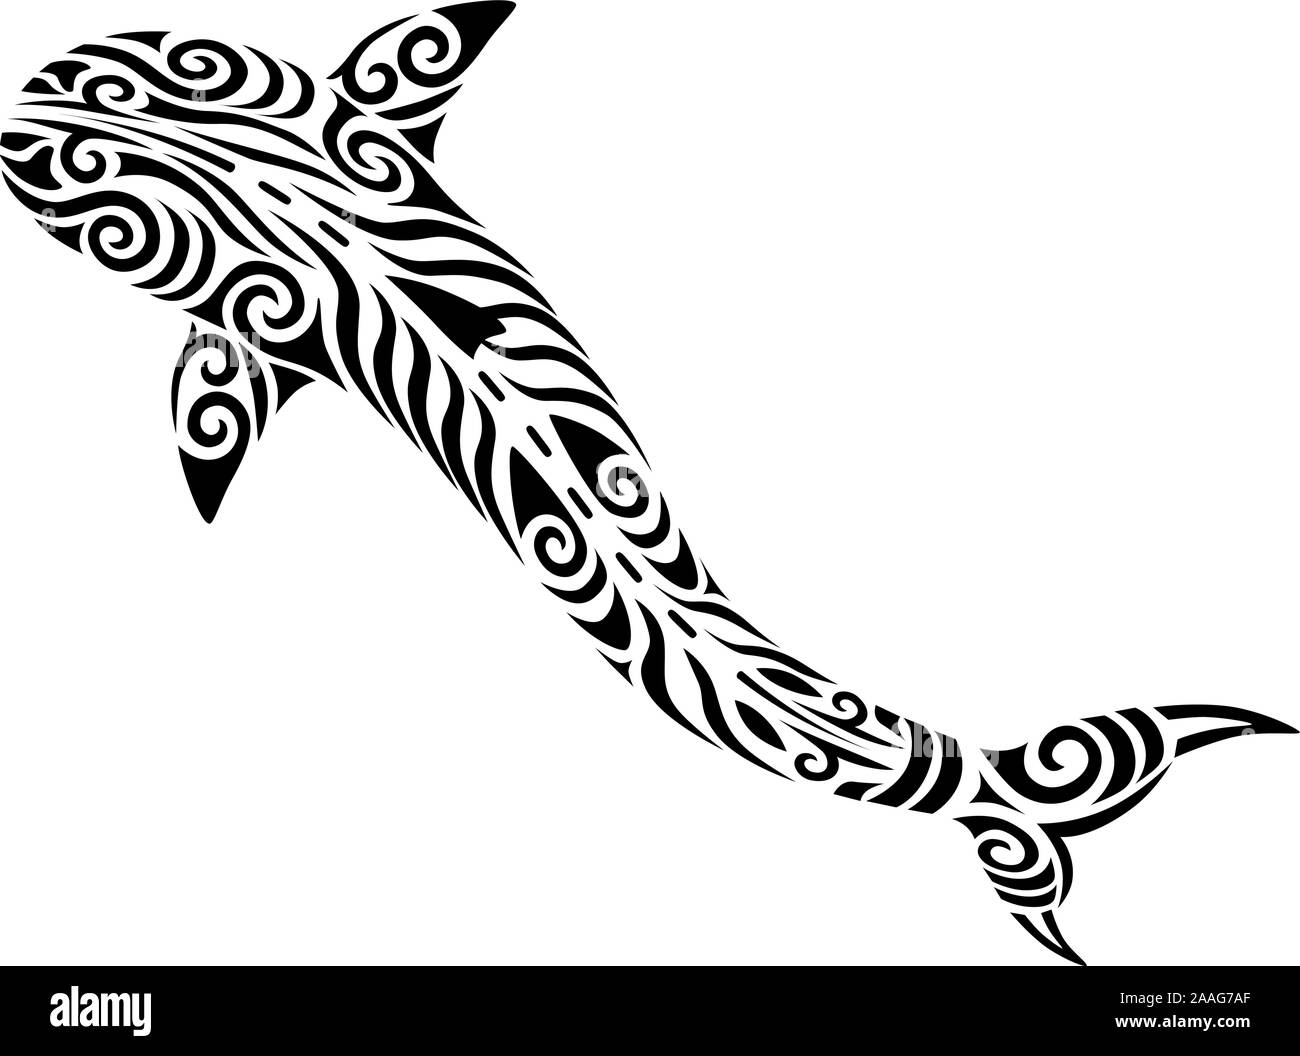 Tribal tatouage requin maori koru stylisé poisson design idéal pour la conception de tatouage - changement de couleur facile Illustration de Vecteur